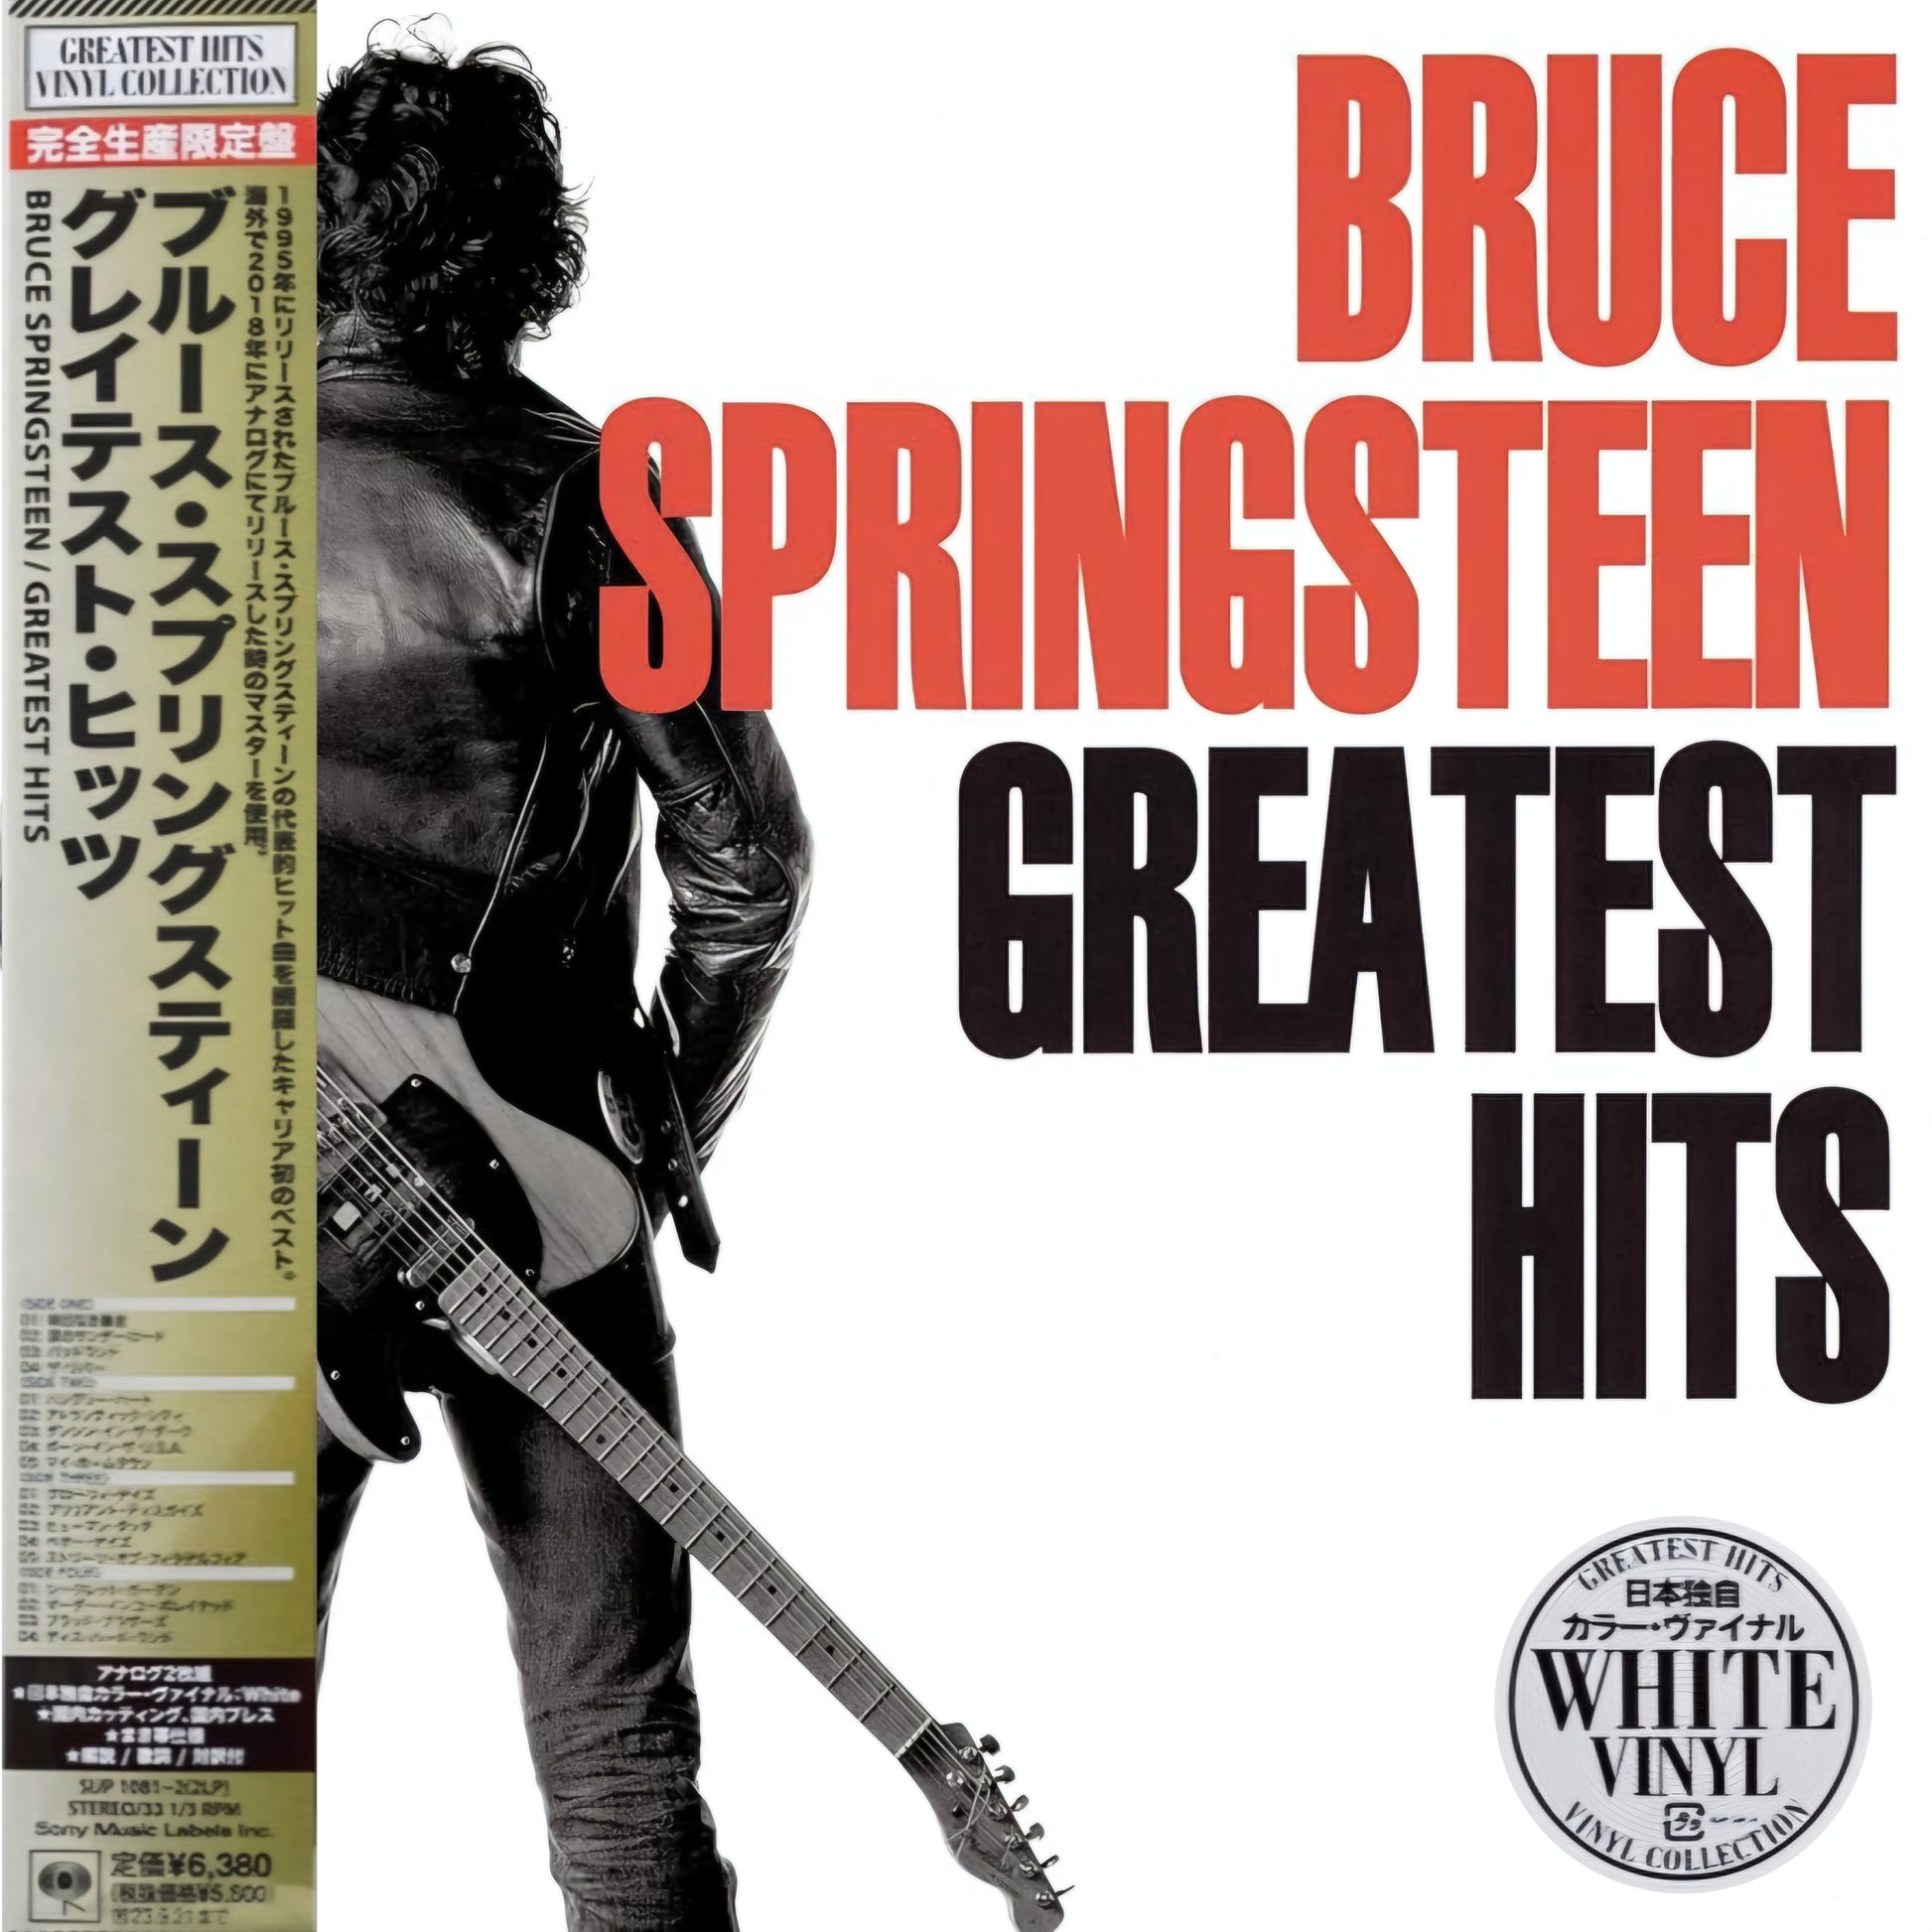 Bruce-Springsteen_Greatest_Hits_Japan_White_Vinyl